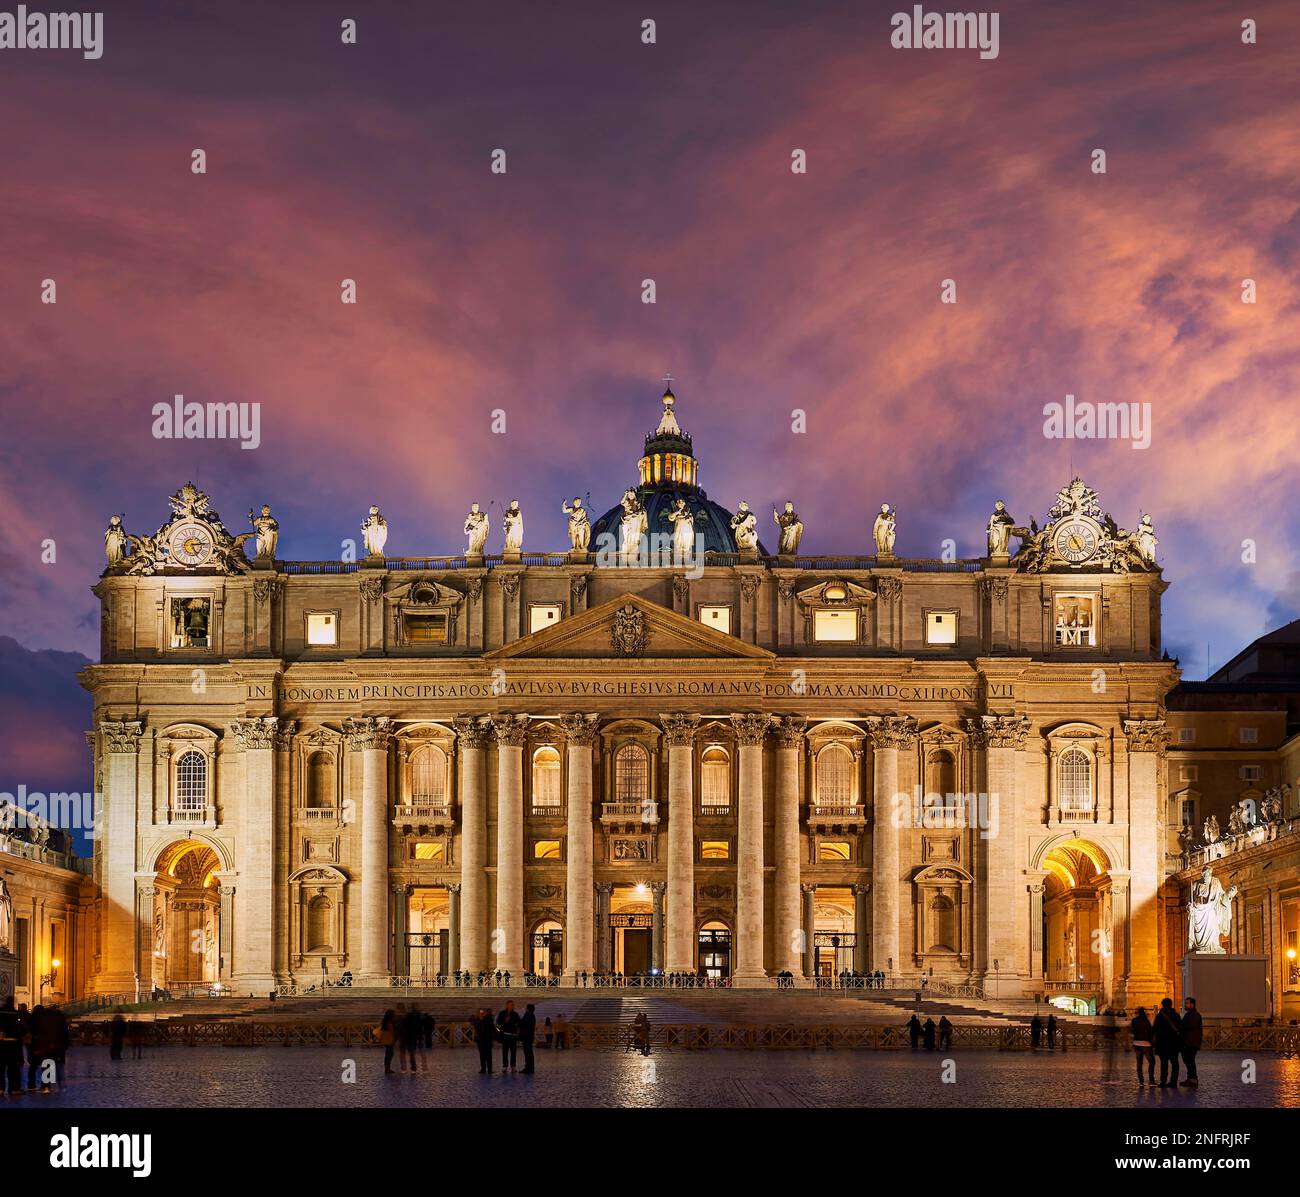 La basilique papale de Saint-Pierre au Vatican ou la basilique Saint-Pierre au coucher du soleil. Rome Italie Banque D'Images